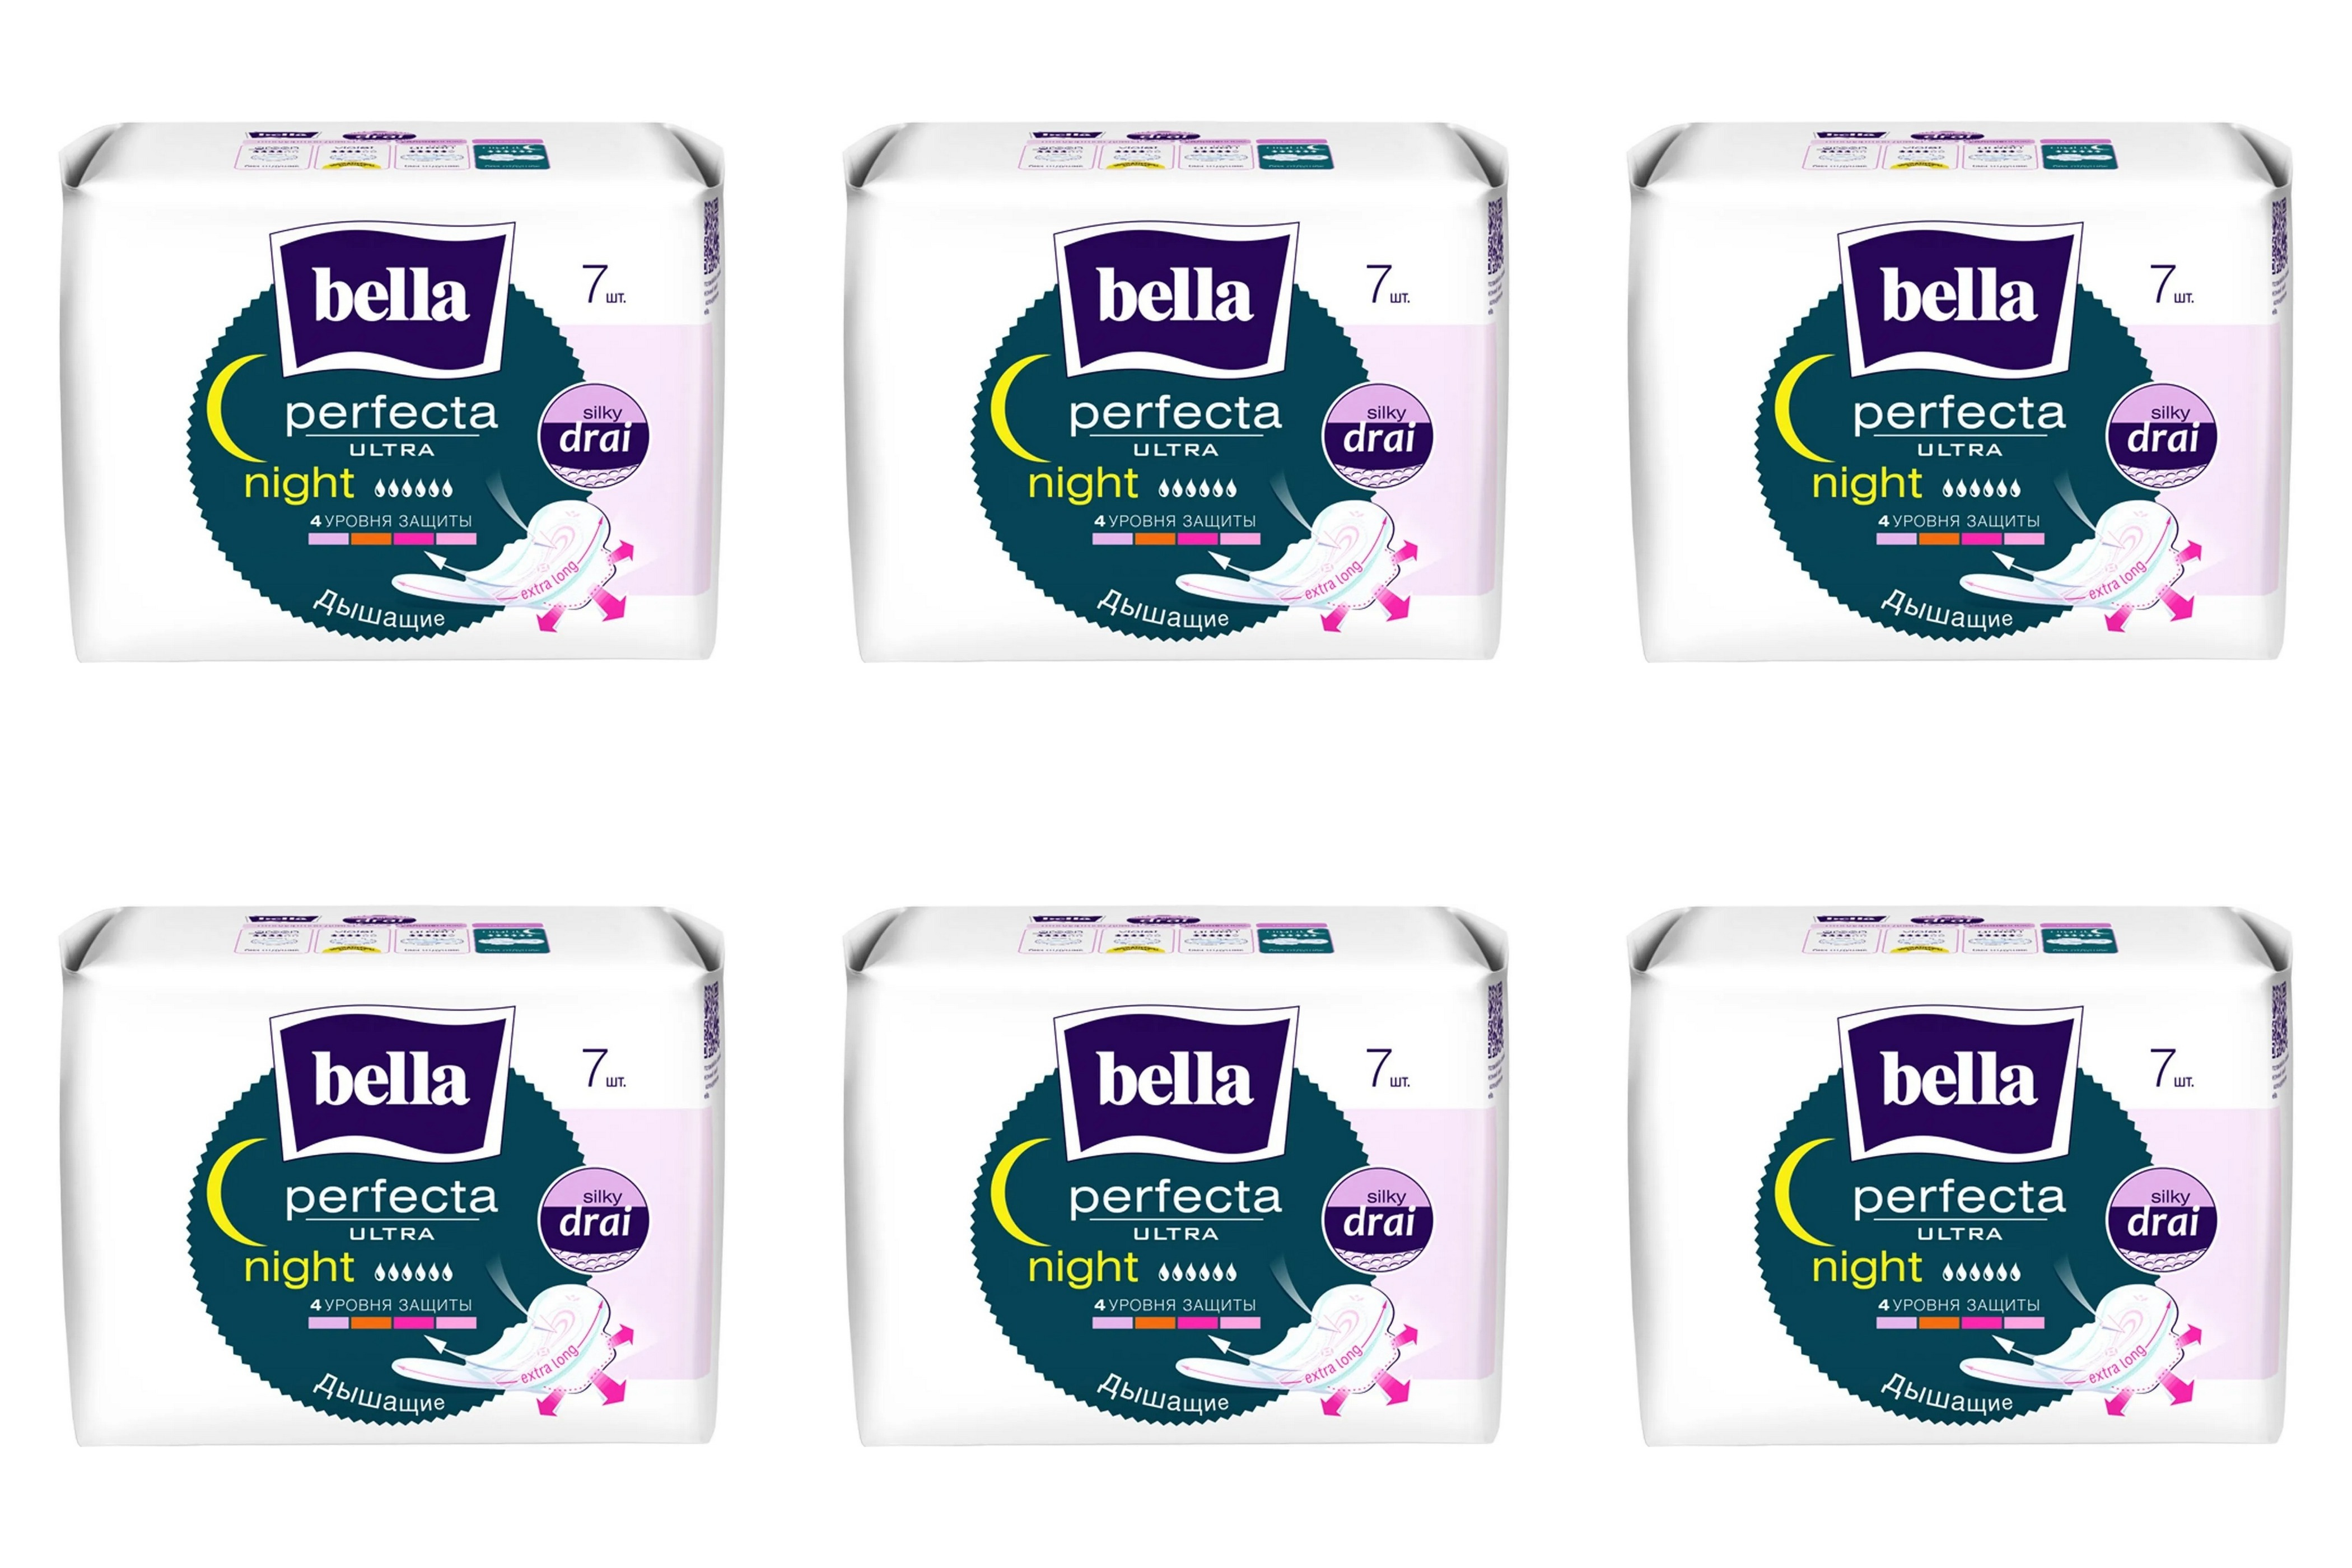 Прокладки BELLA perfecta ultra nigh silky drai супертонкие, 7шт х 6 упаковок